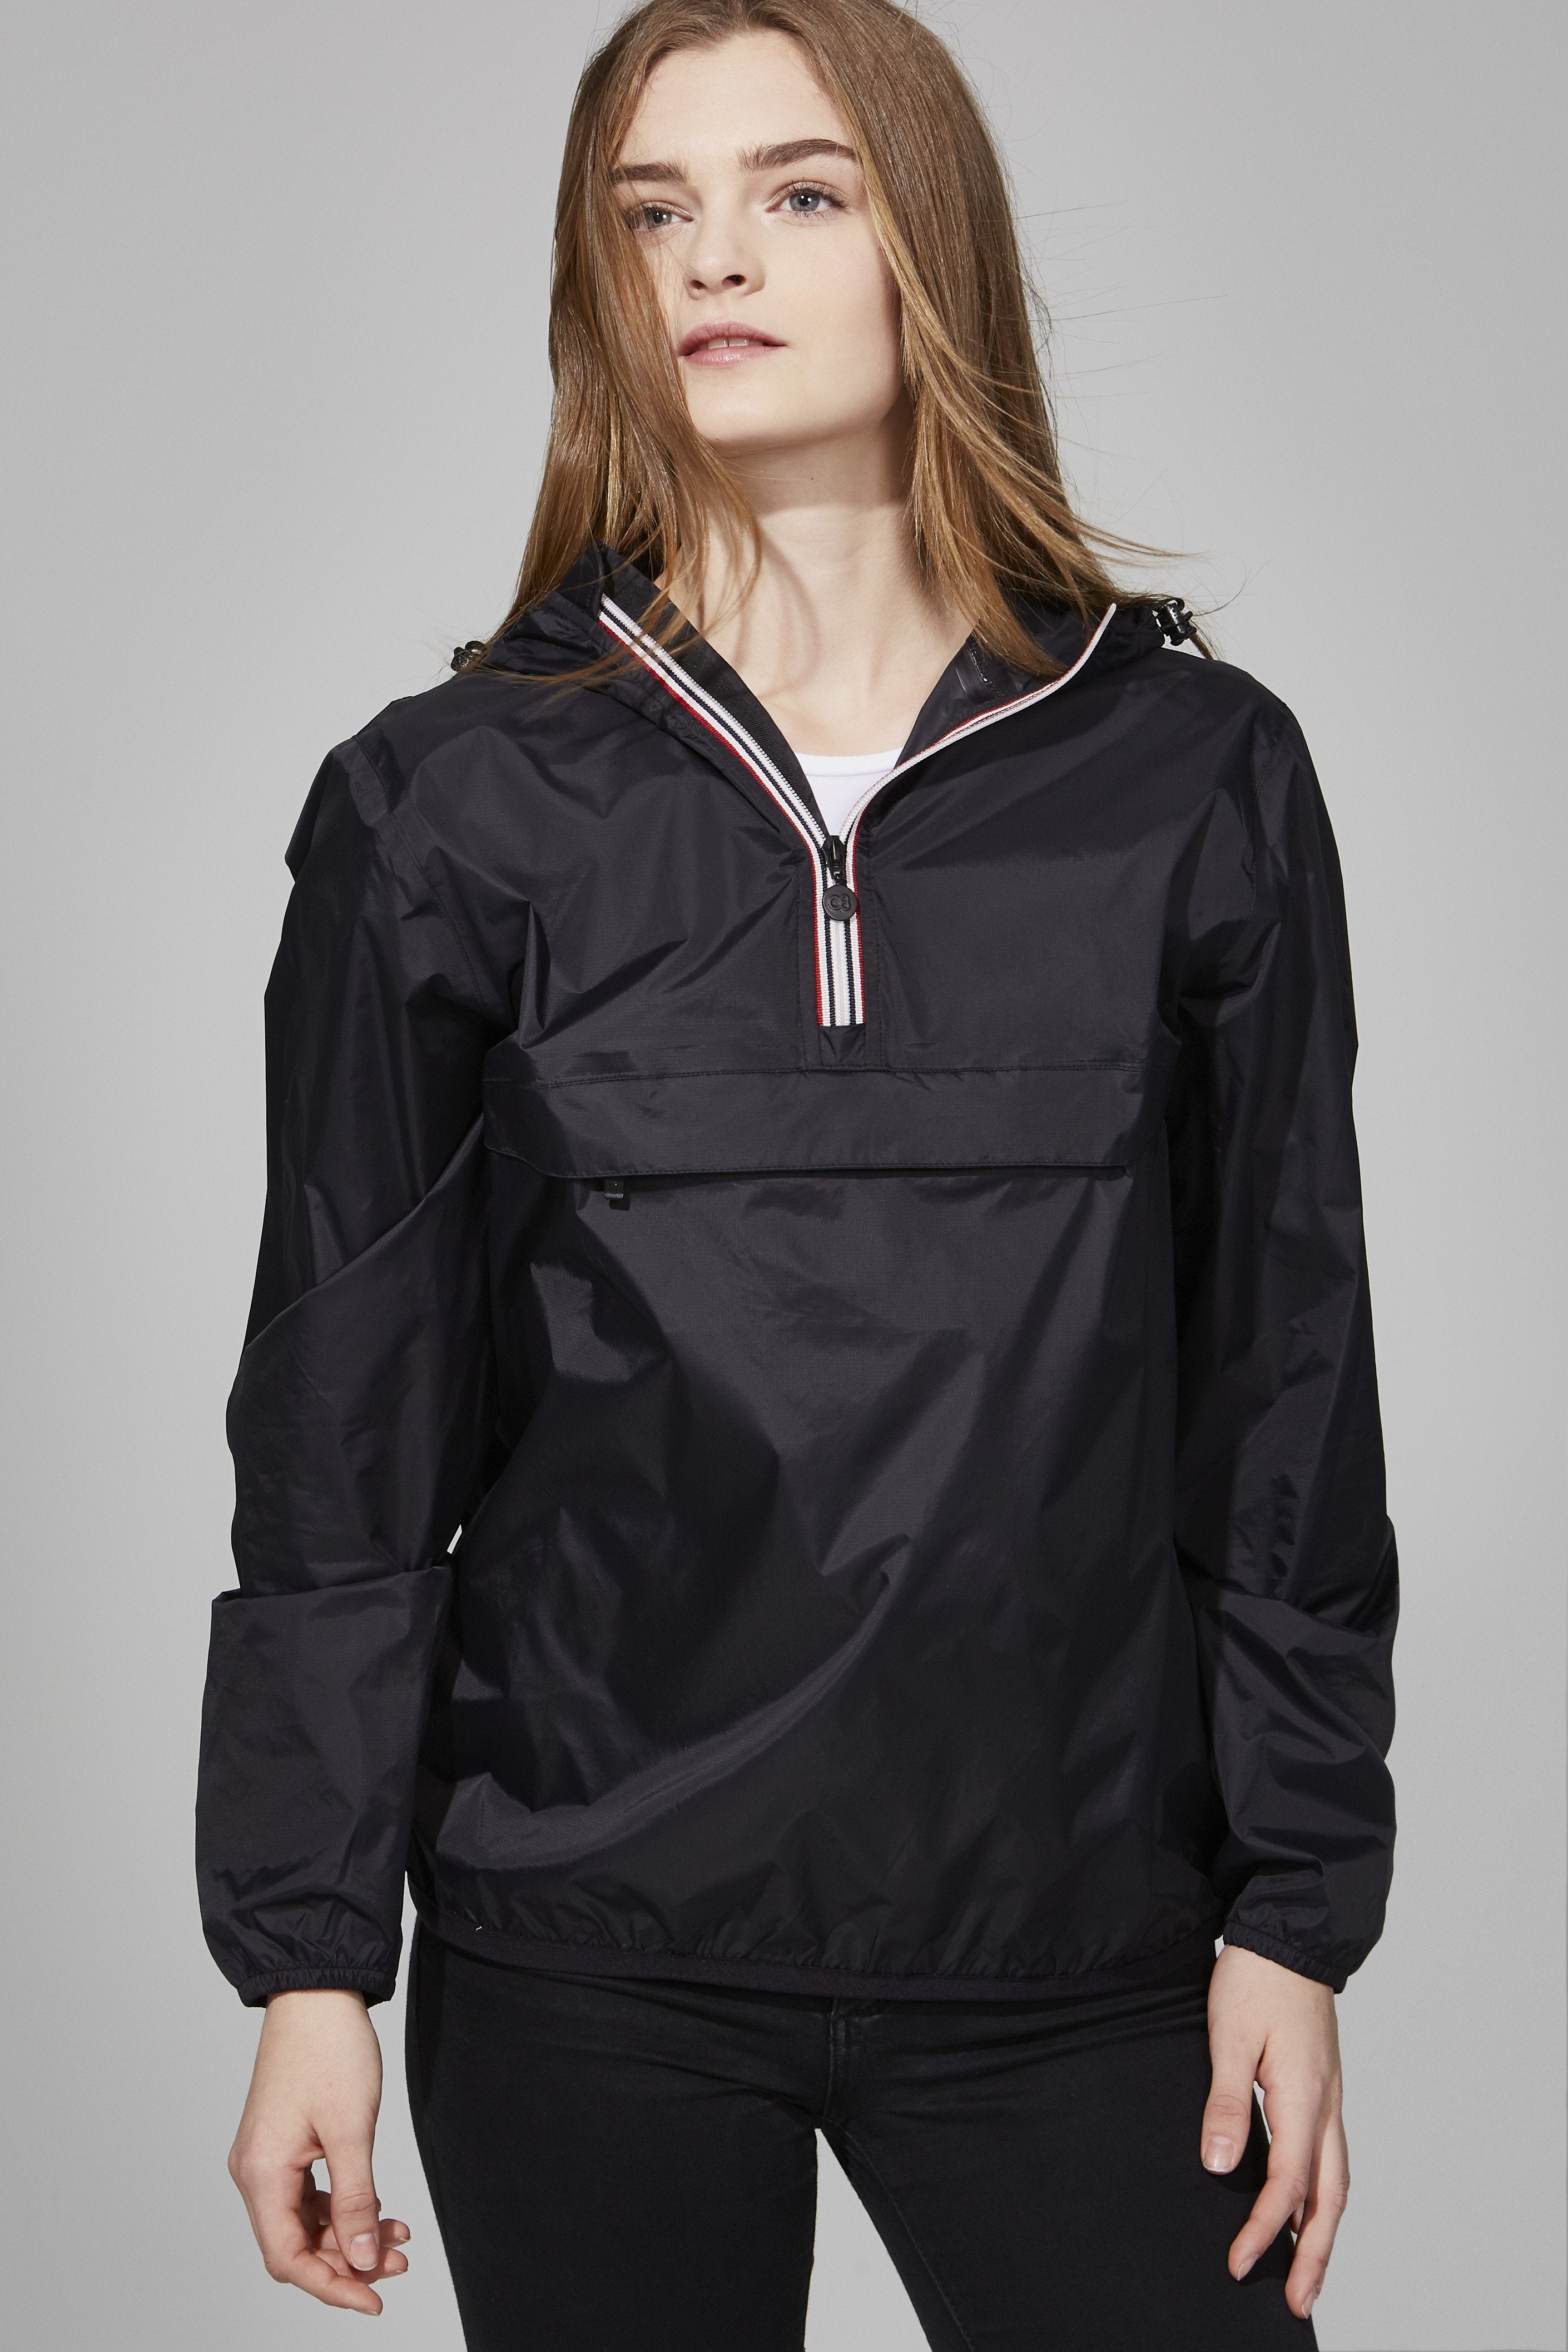 Women black Quarter Zip Packable Rain Jacket - O8lifestyle.